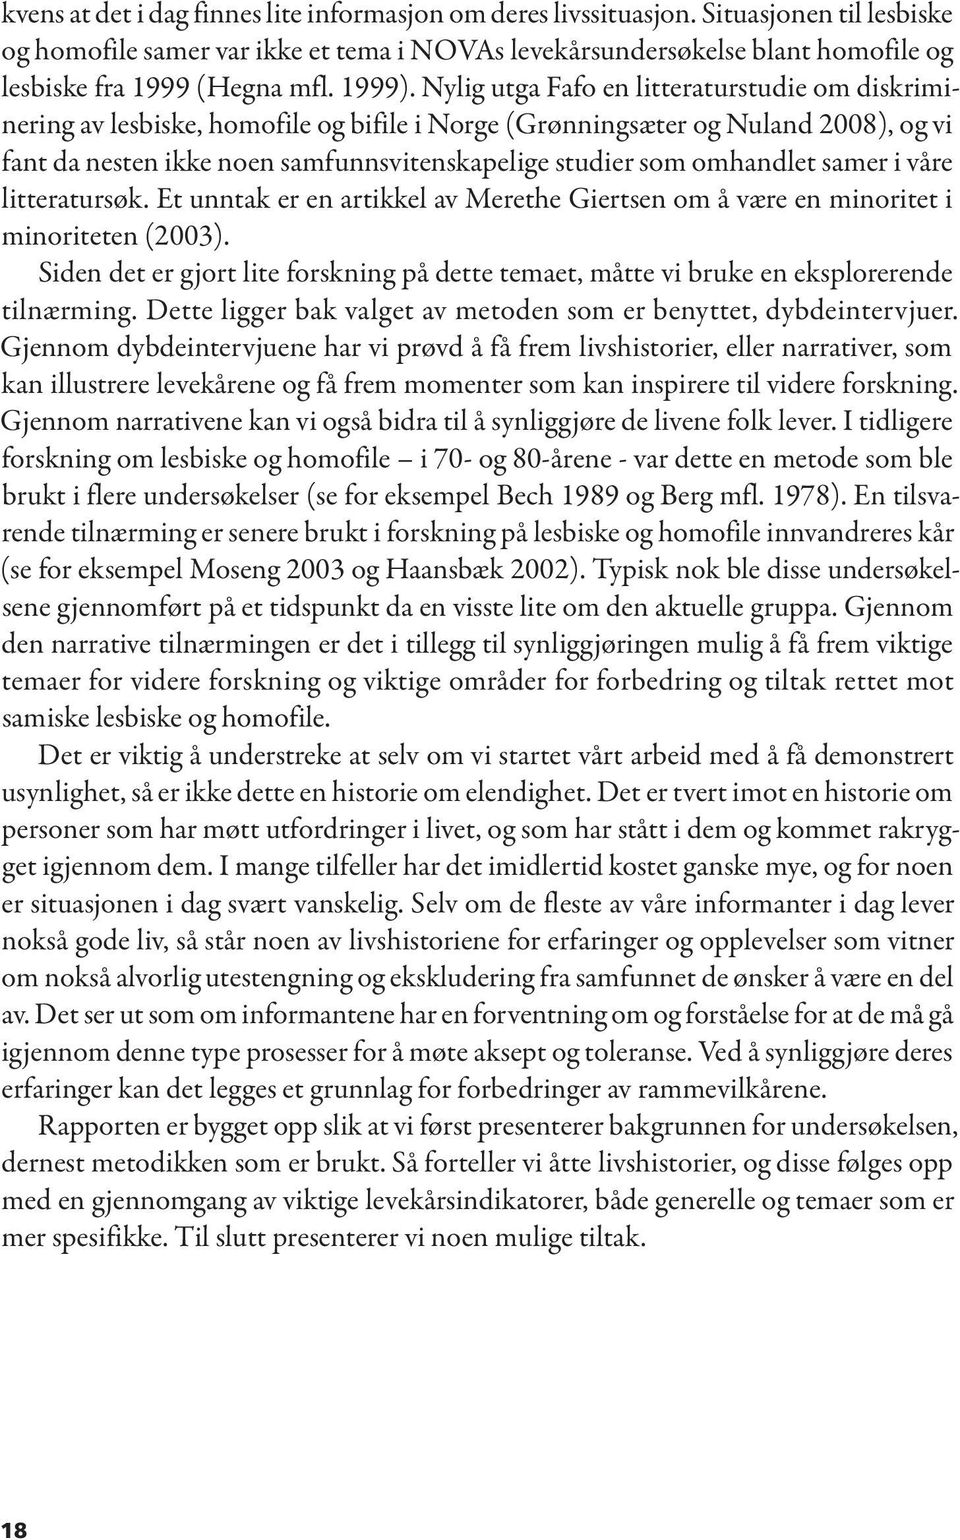 Nylig utga Fafo en litteraturstudie om diskriminering av lesbiske, homofile og bifile i Norge (Grønningsæter og Nuland 2008), og vi fant da nesten ikke noen samfunnsvitenskapelige studier som